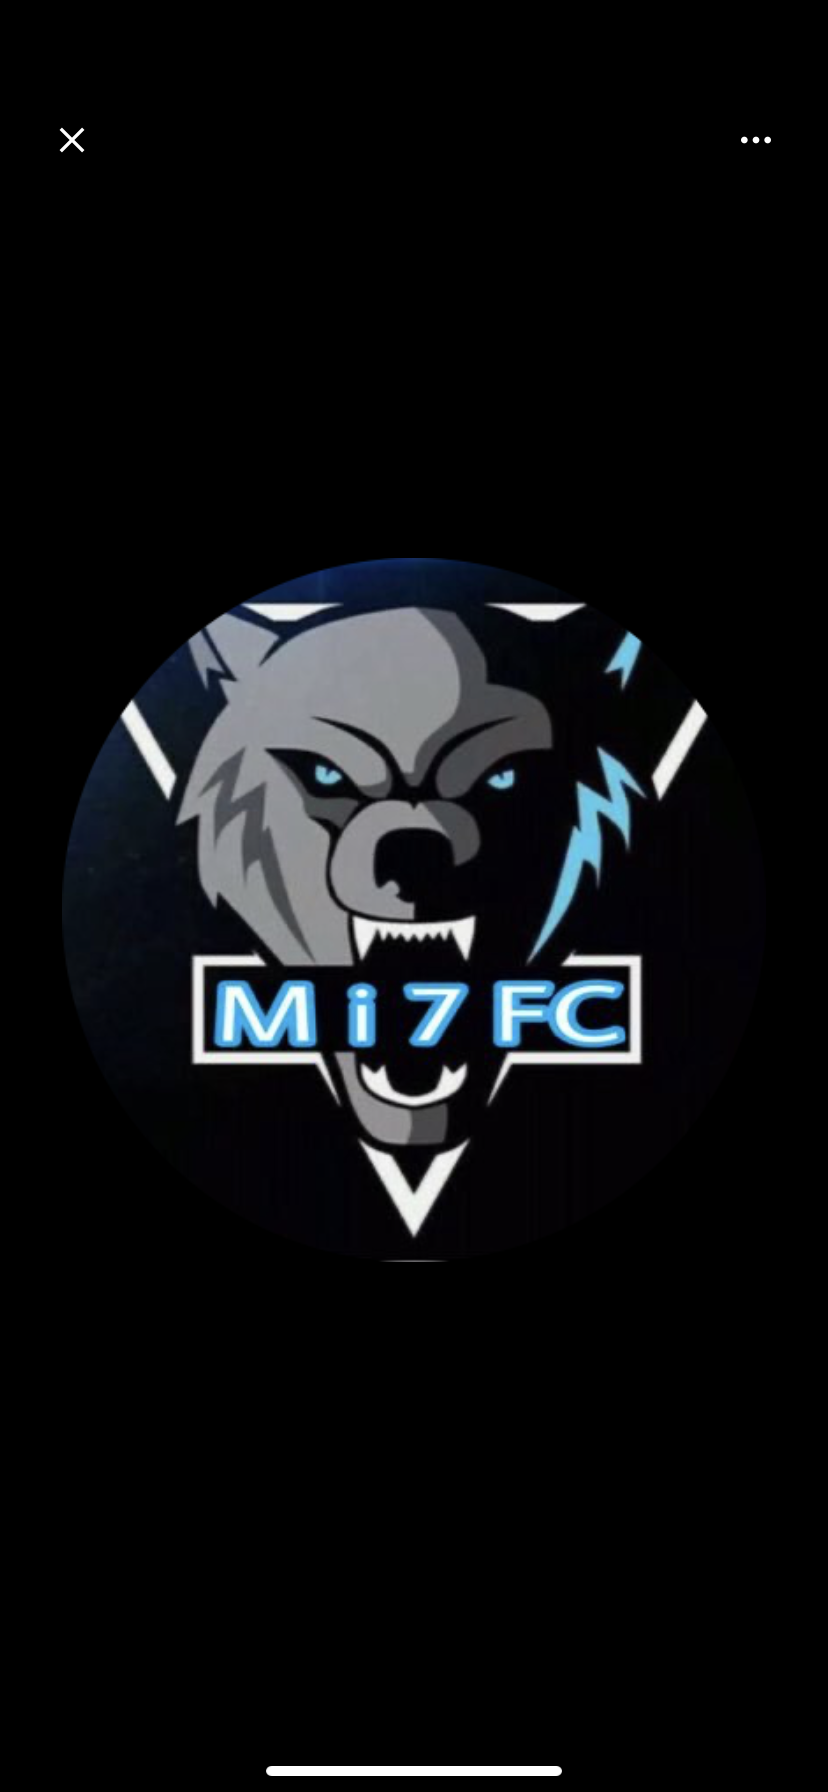 Mi7 Fc